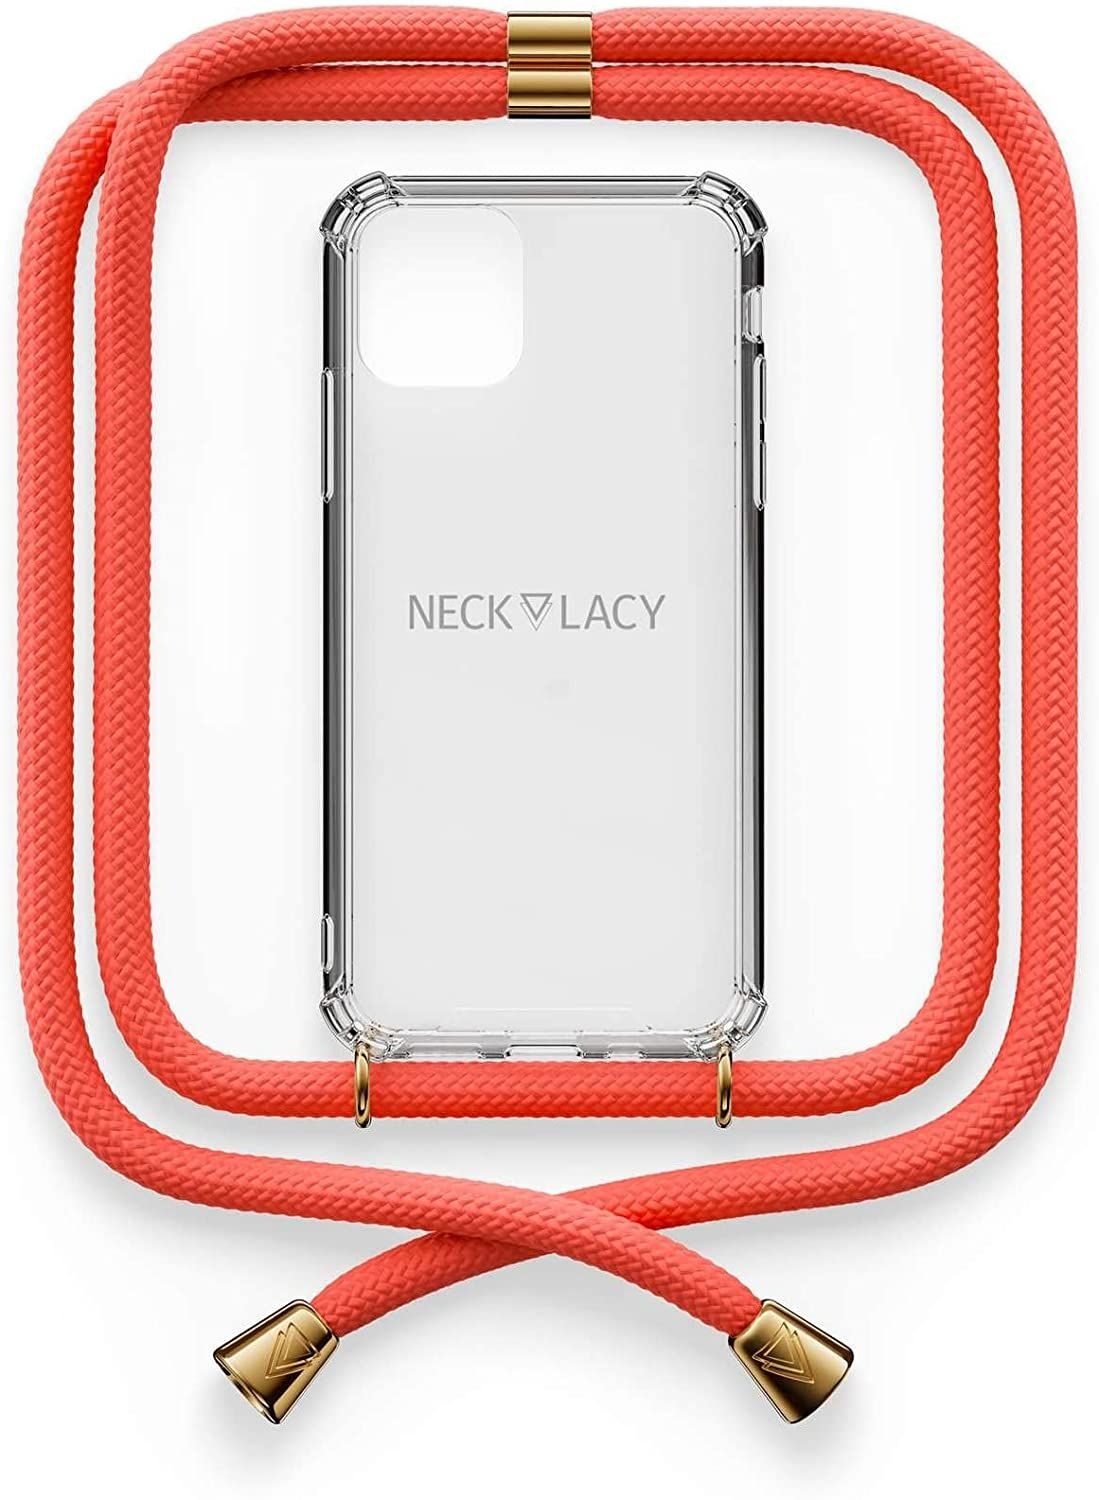 NECKLACY Handykette Handyhülle zum umhängen - für iPhone 11 Pro - Case / Handyhülle mit Band zum umhängen - Trageband Hals mit Kordel - Smartphone Necklace, Coral Reef